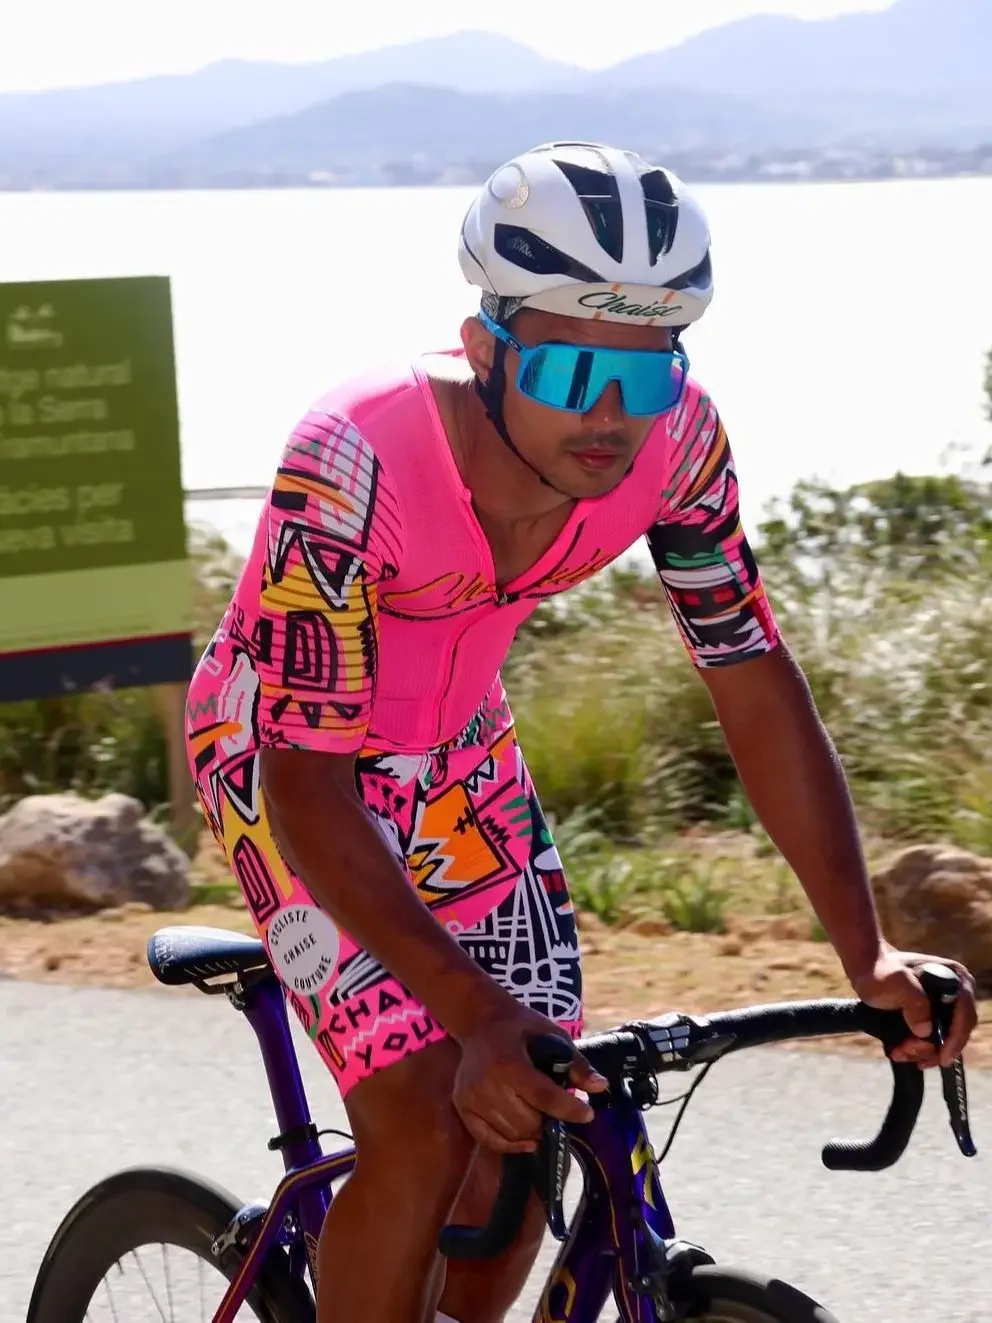 

Шезлонг-кутюр мужской кожаный костюм Одежда женская велосипедная Одежда дорожный велосипед комбинезон ropa de ciclismo mtb командный комплект